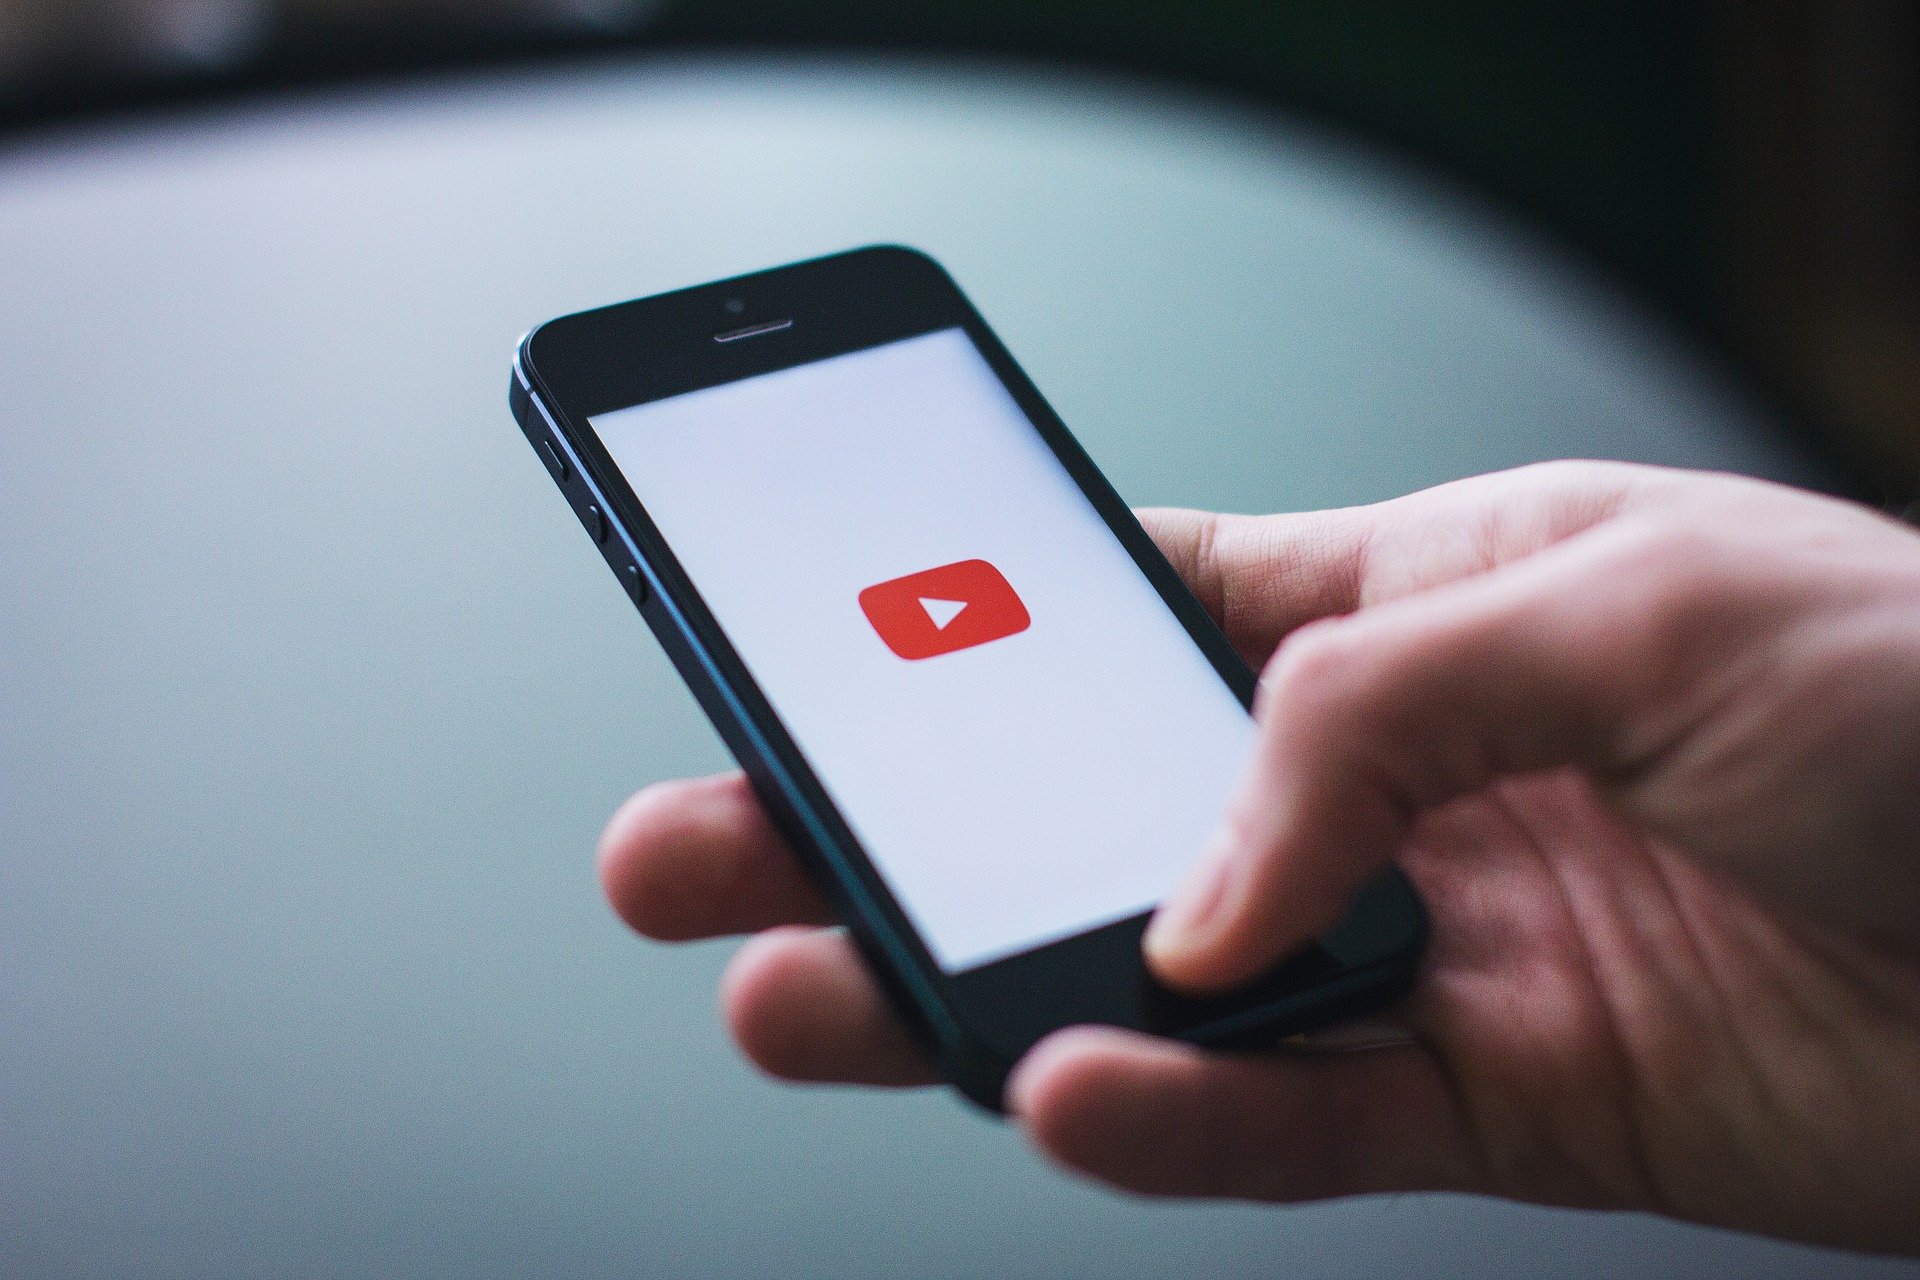 Youtube on maailman suosituin videoalusta. Videoita kulutetaan yhä enemmän mobiililaitteilla.